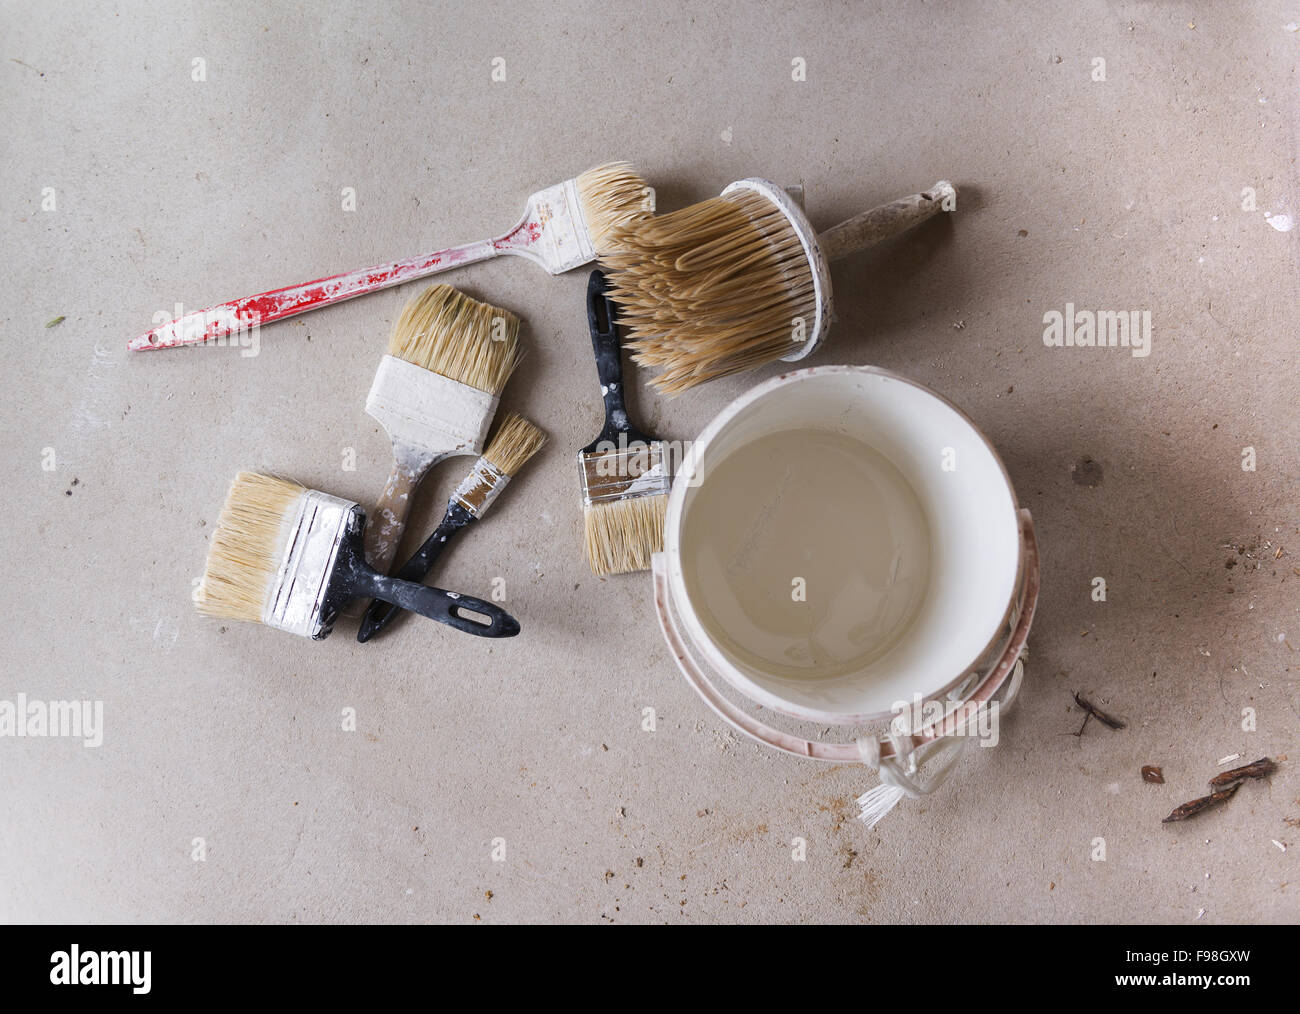 La preparazione per la verniciatura della parete. Dettaglio del pennello e secchio di colore sul pavimento. Foto Stock